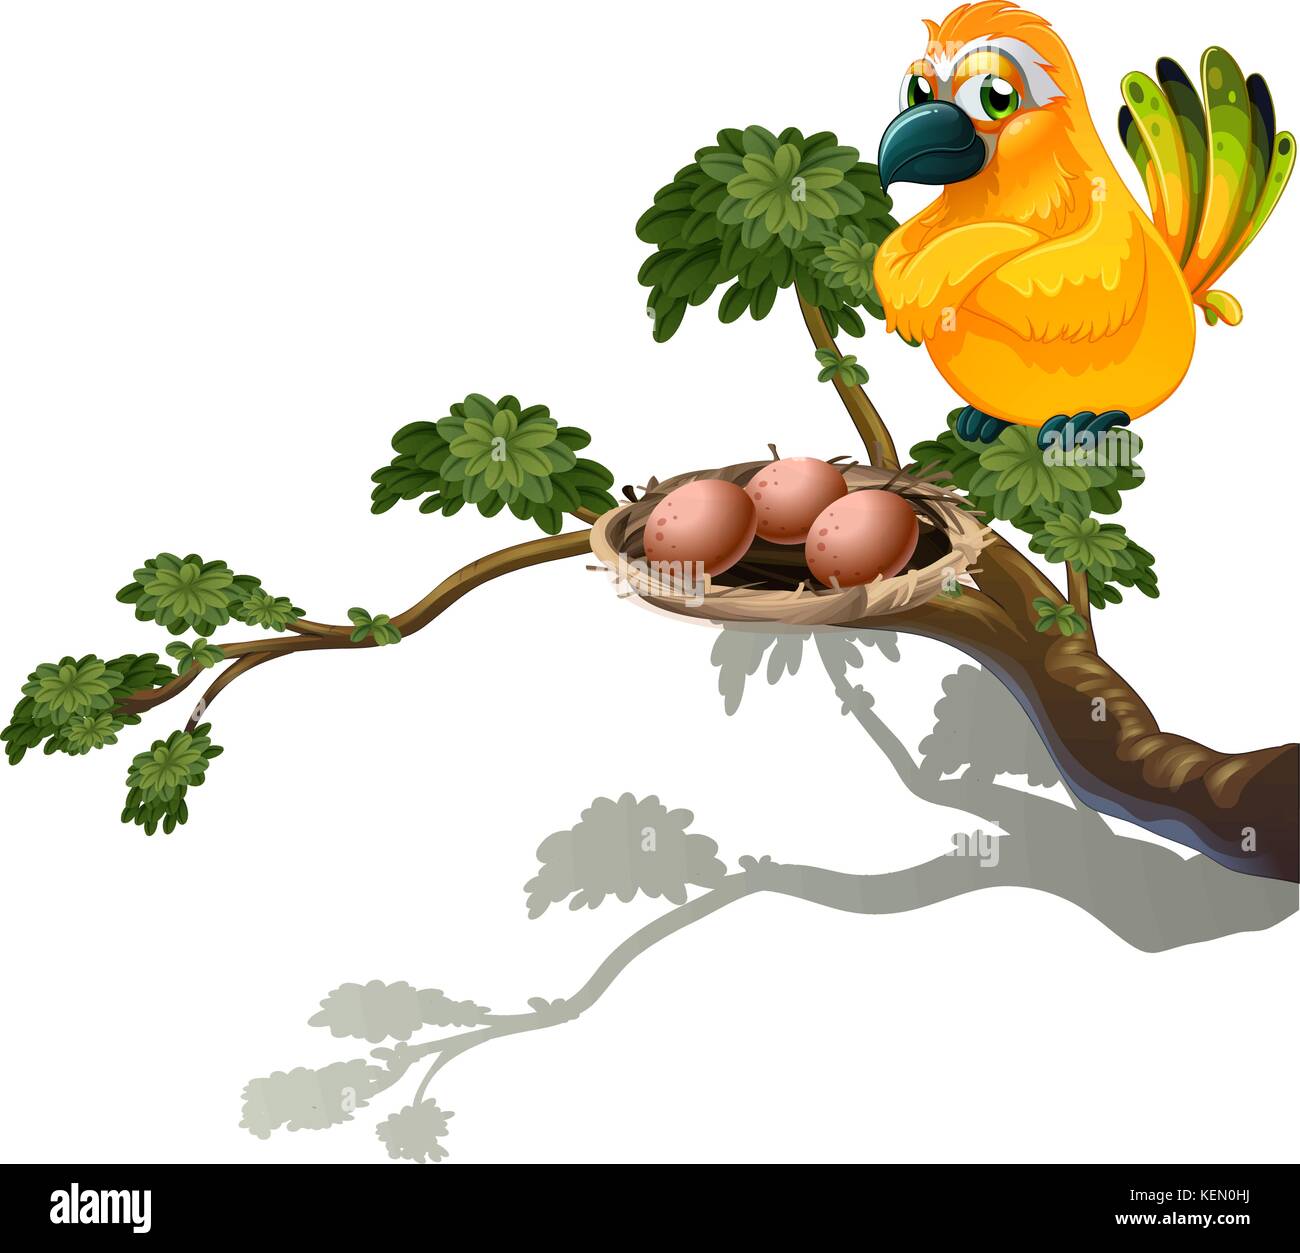 Ilustración de una naranja de aves los huevos sobre un fondo blanco. Ilustración del Vector